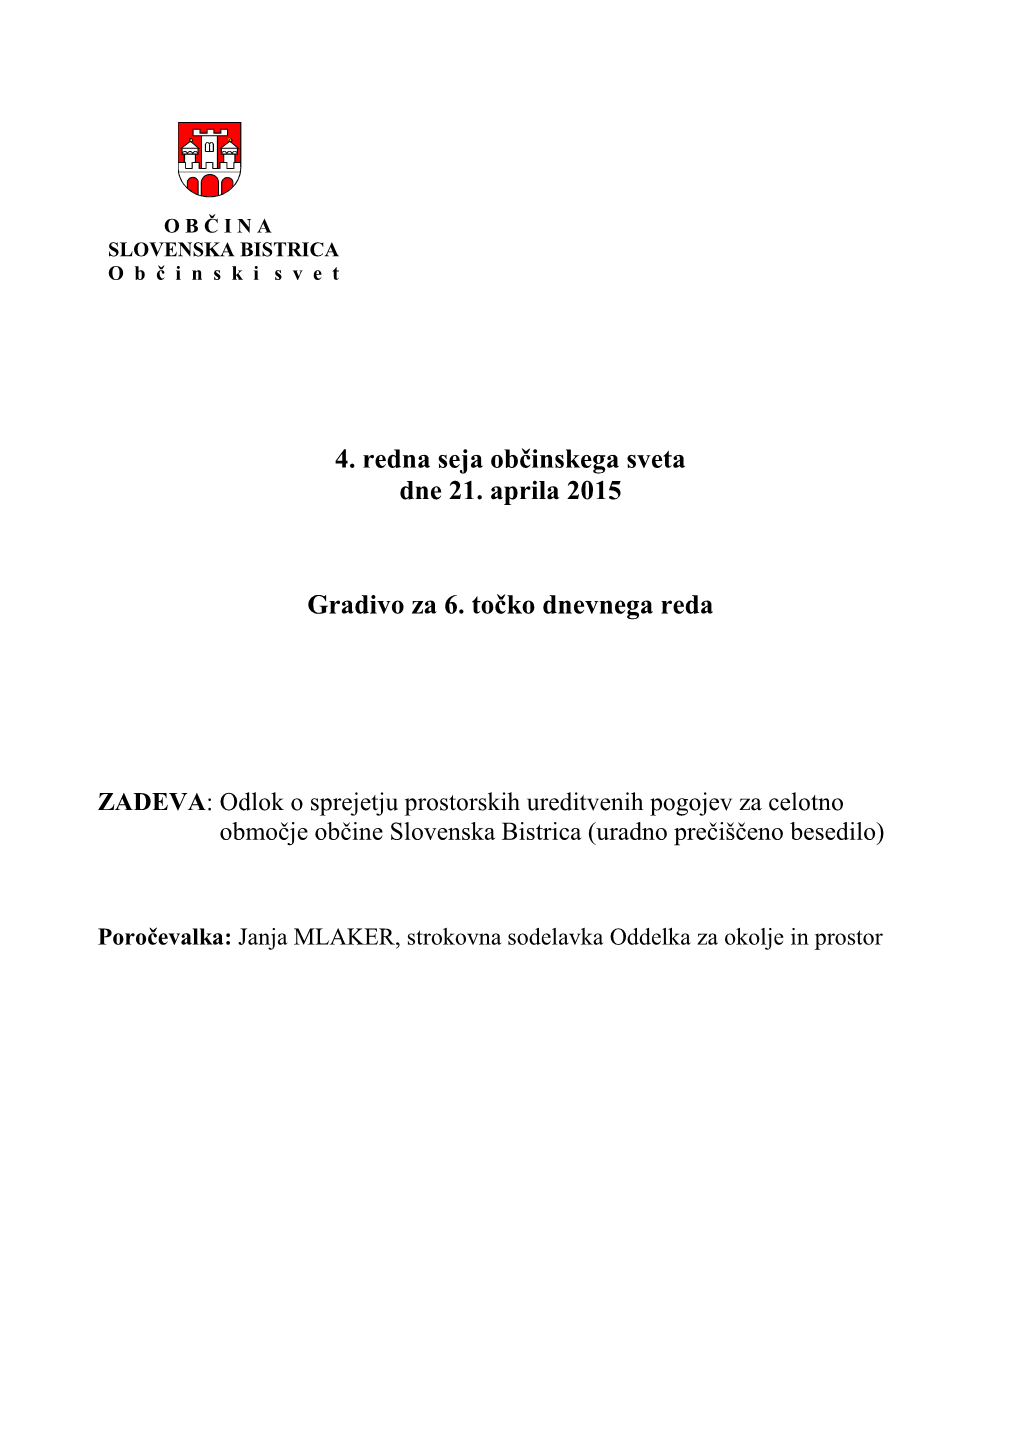 ZADEVA: Odlok O Sprejetju Prostorskih Ureditvenih Pogojev Za Celotno Območje Občine Slovenska Bistrica (Uradno Prečiščeno Besedilo)